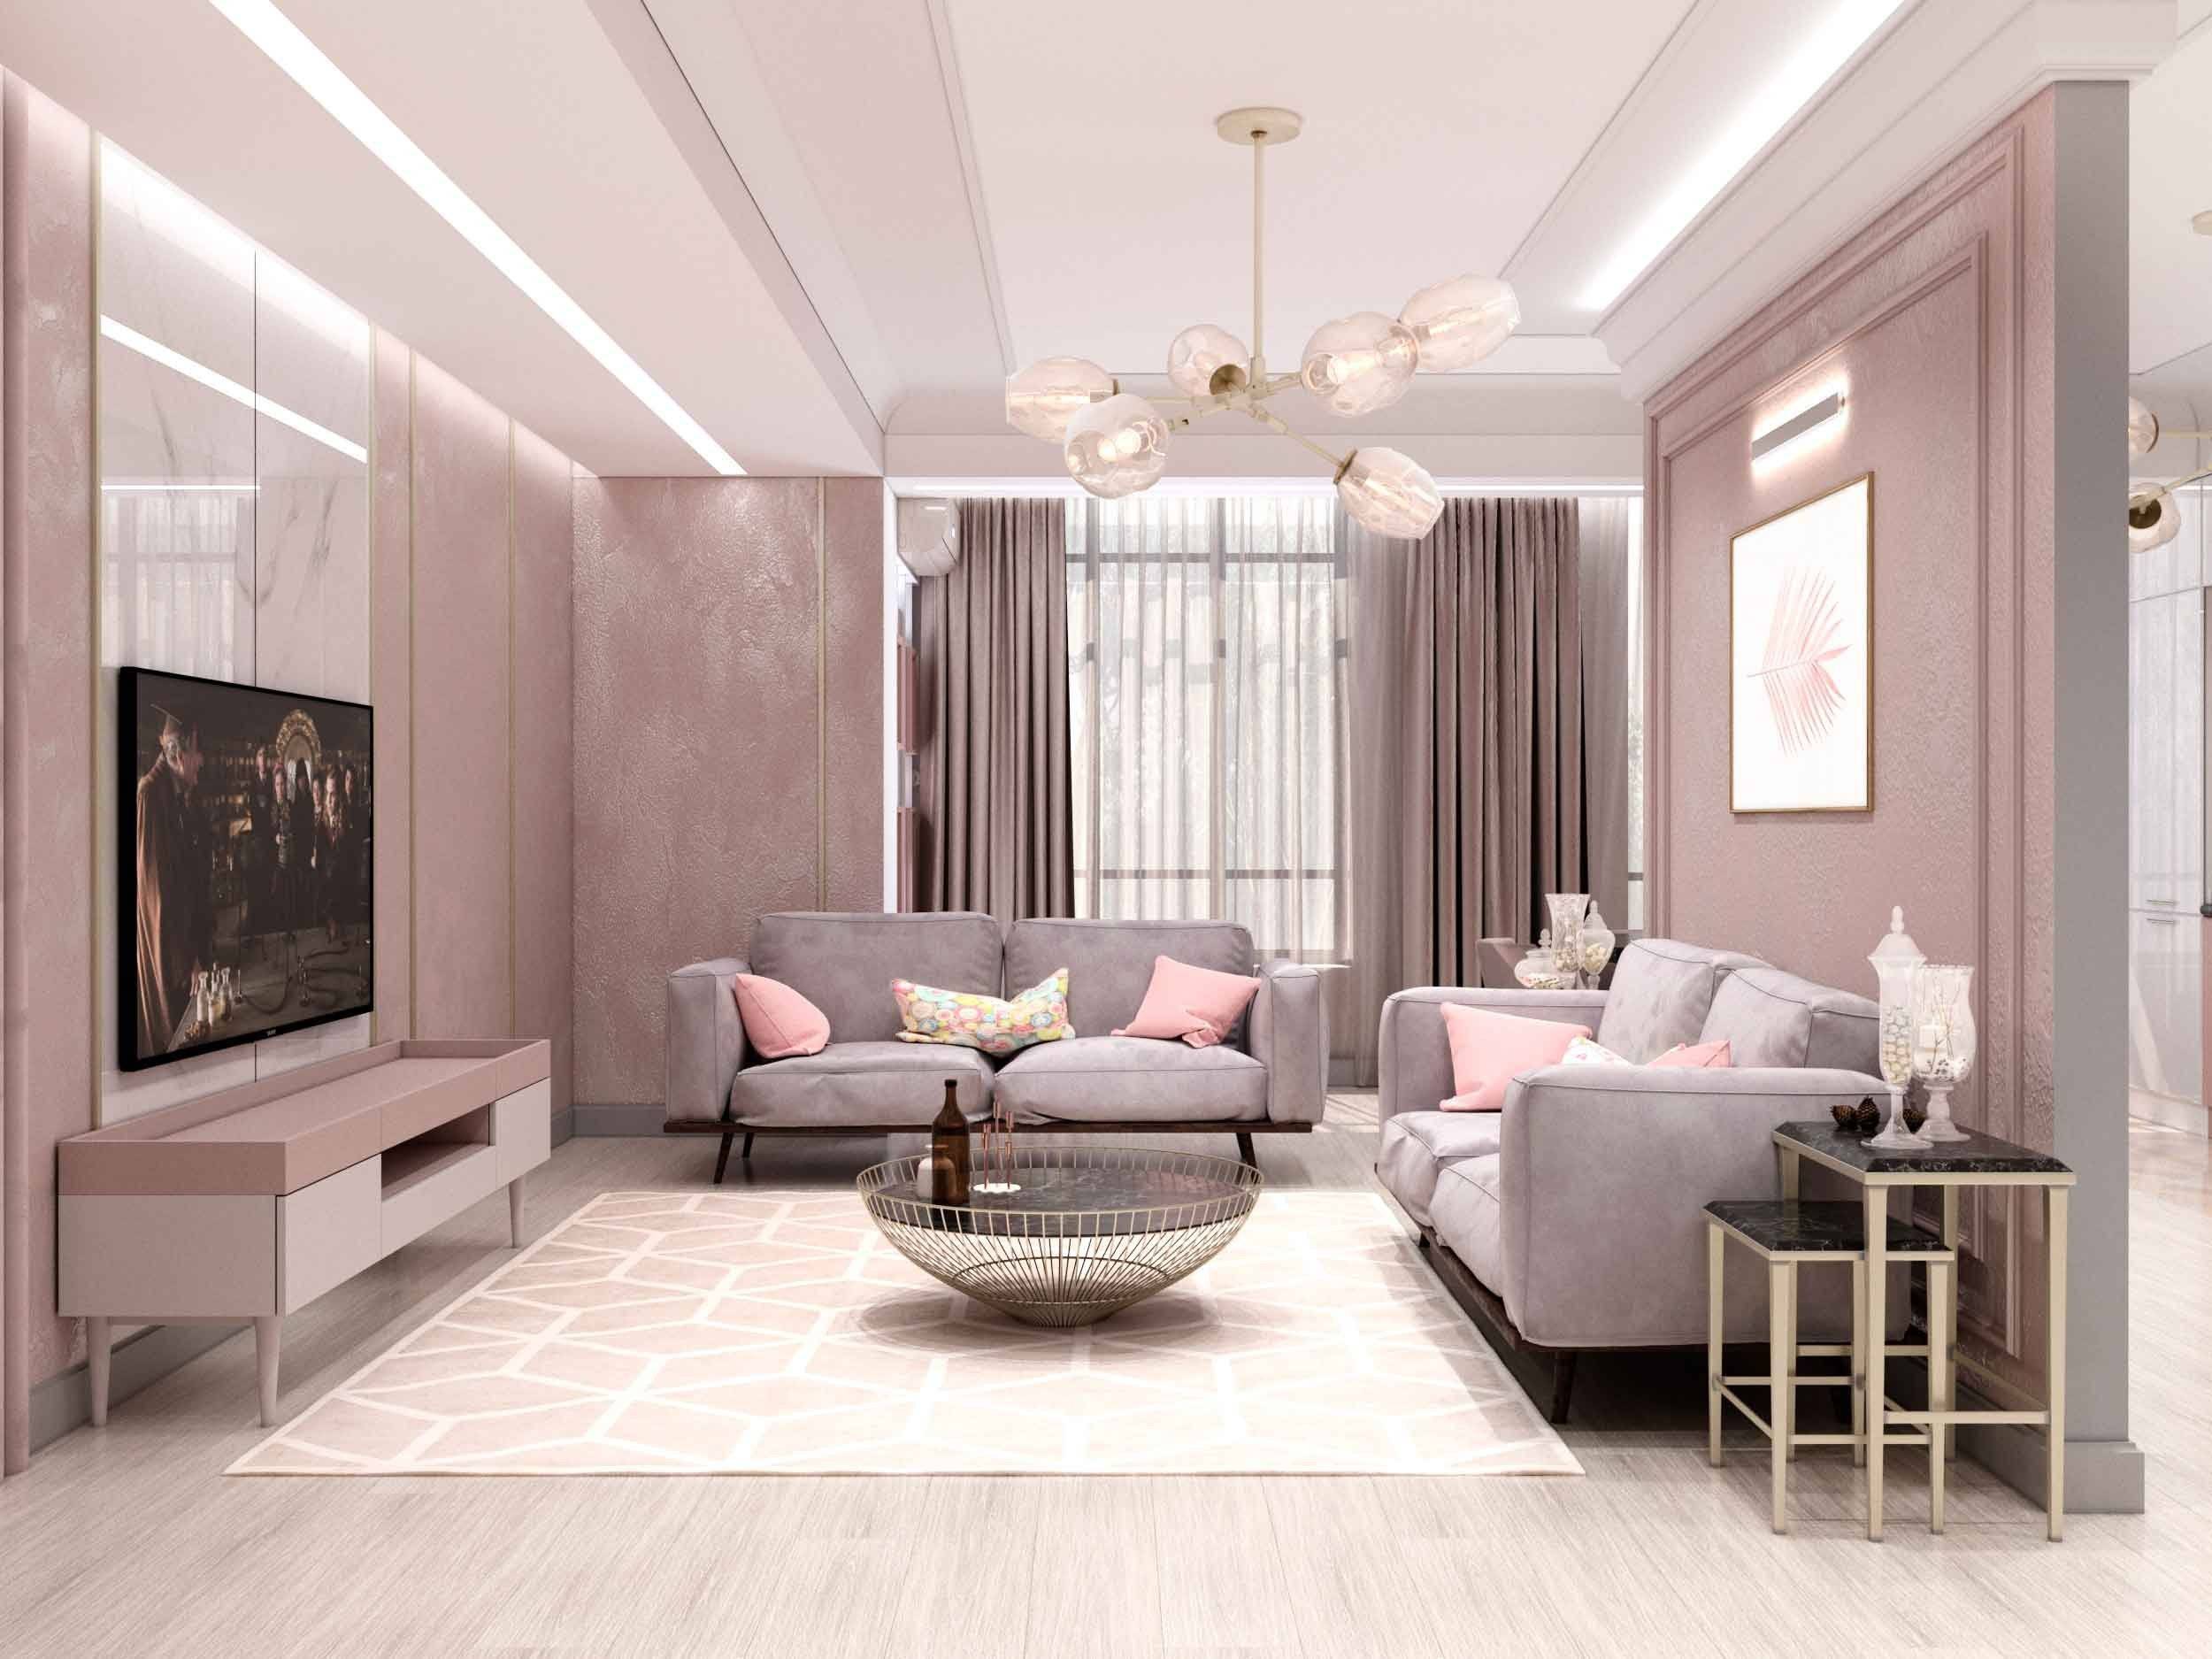 Новинки дизайна интерьера гостиной 2020 года - отделка потолков, стен и полов. выбор мебели и освещения. цветовые решения при дизайне гостиной (фото + видео)